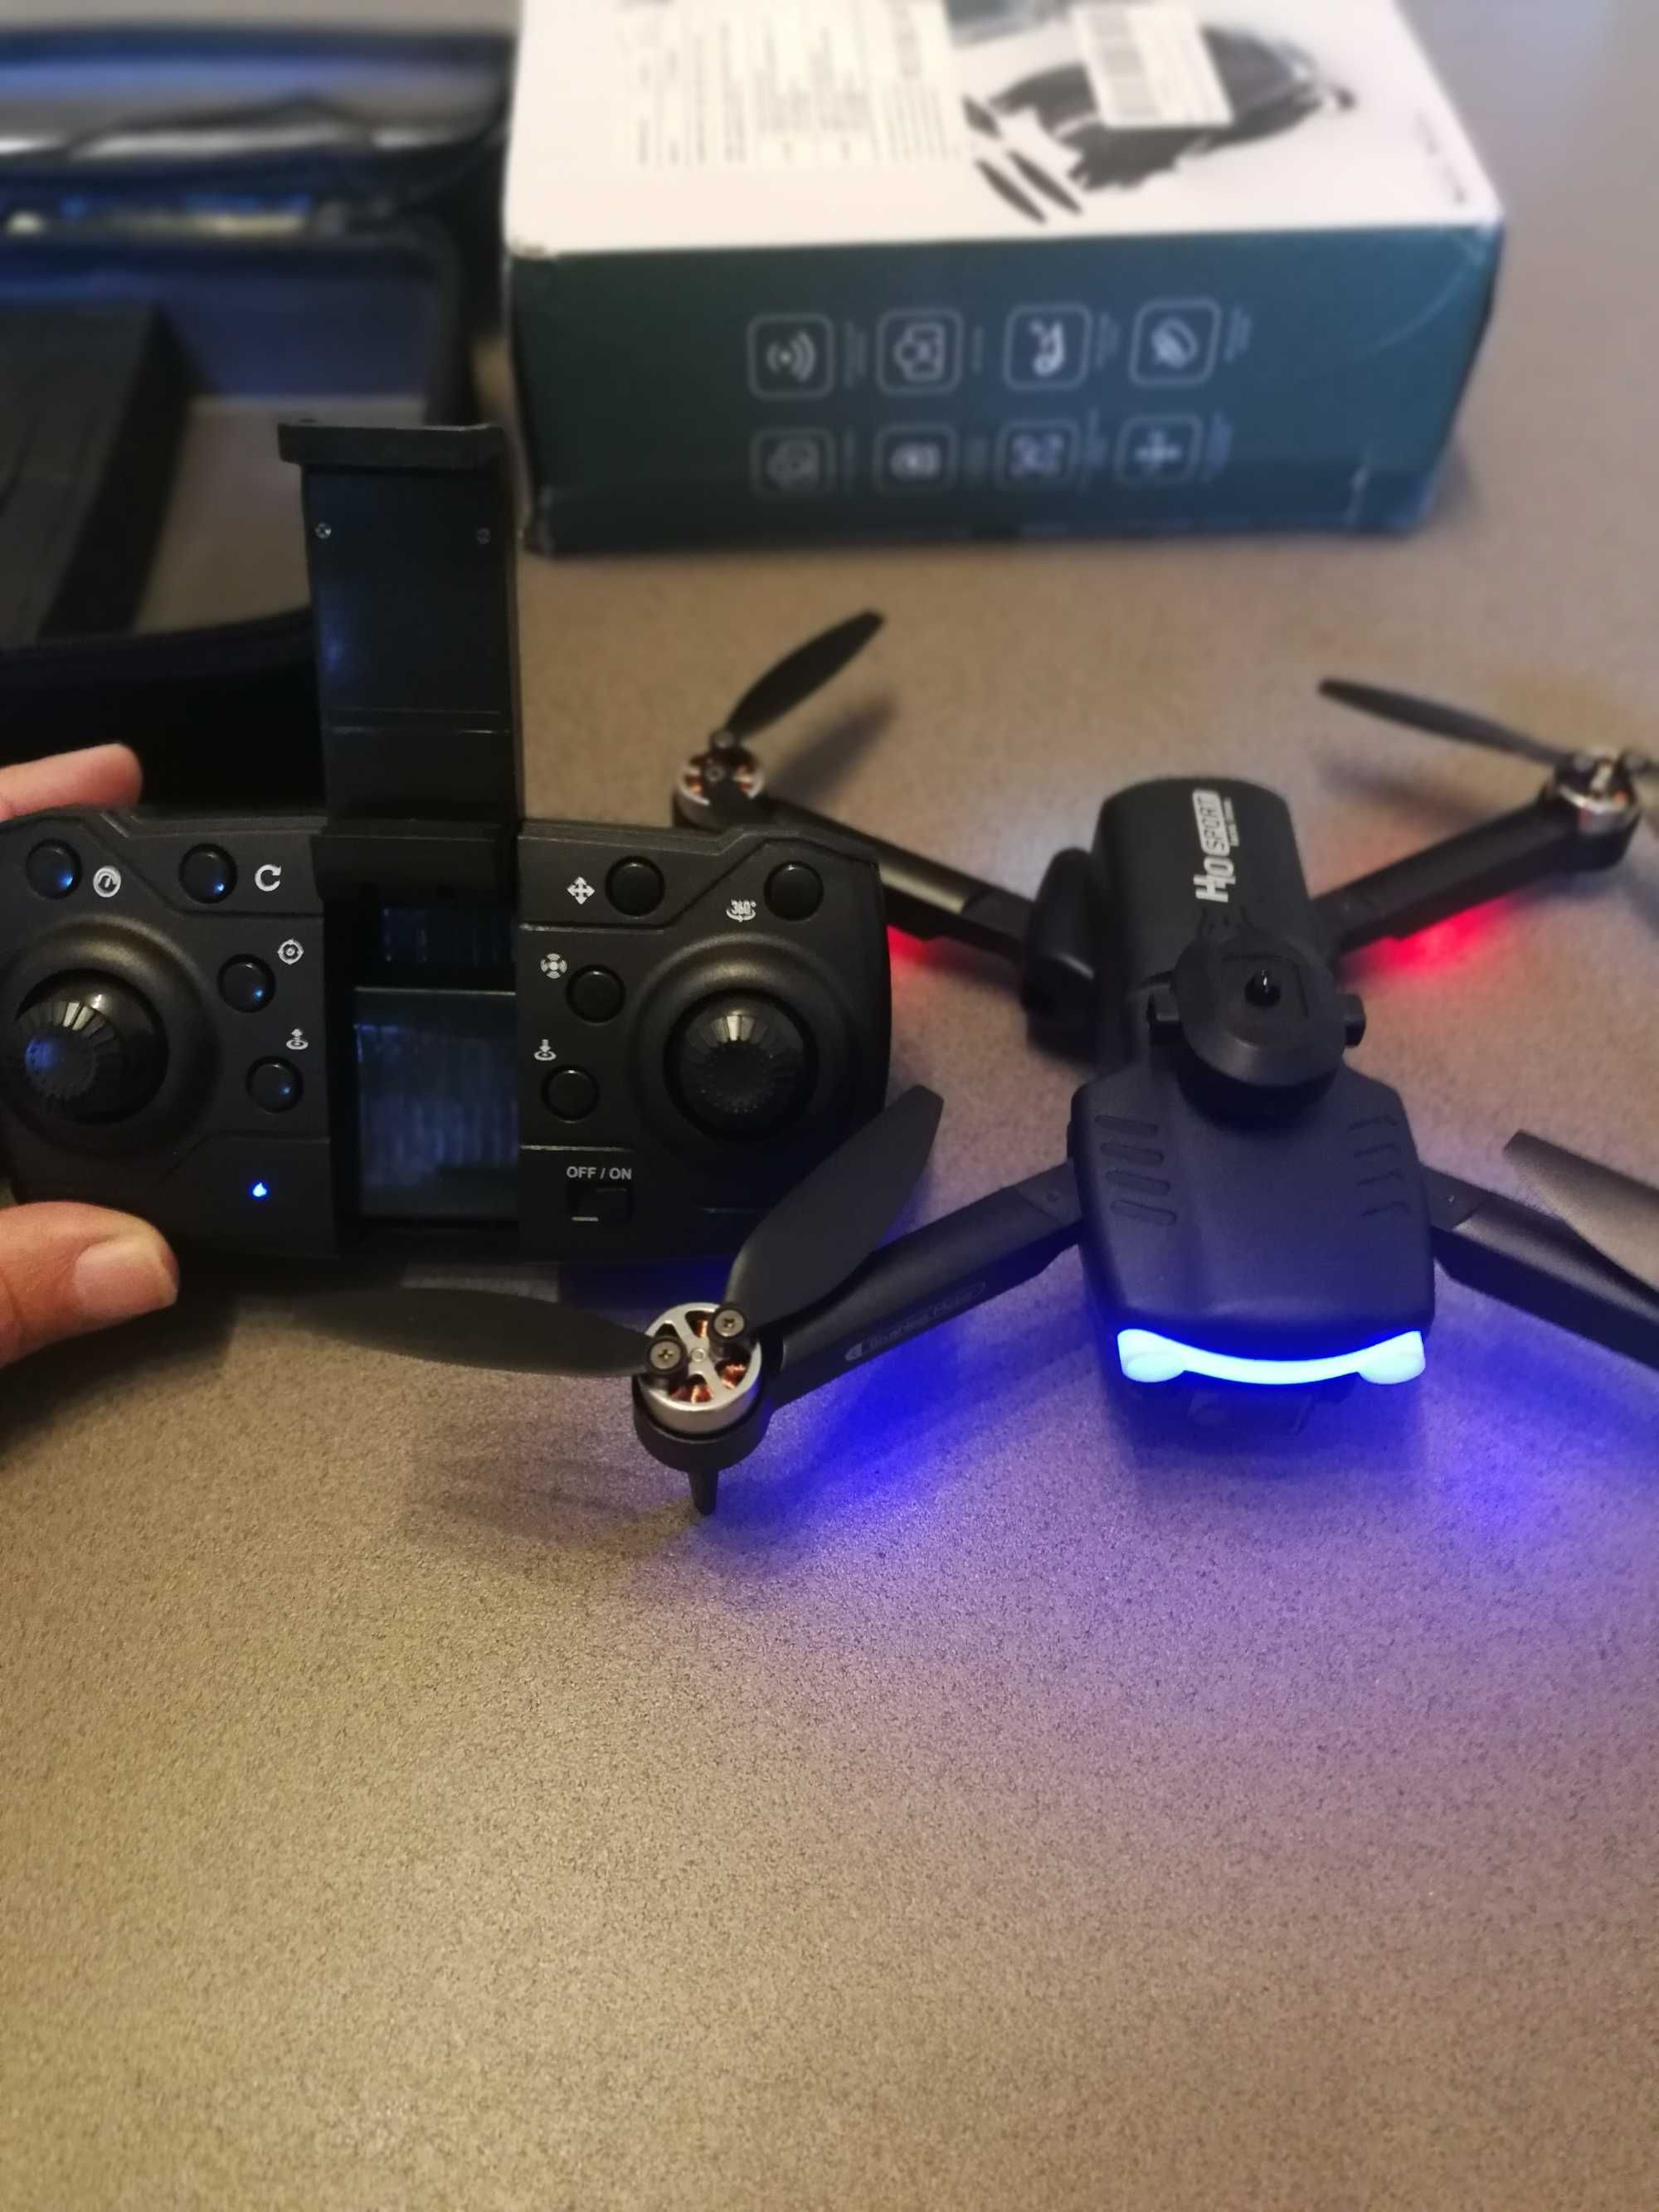 Excelente novo drone  com câmera e acessórios extras. (2 baterias)